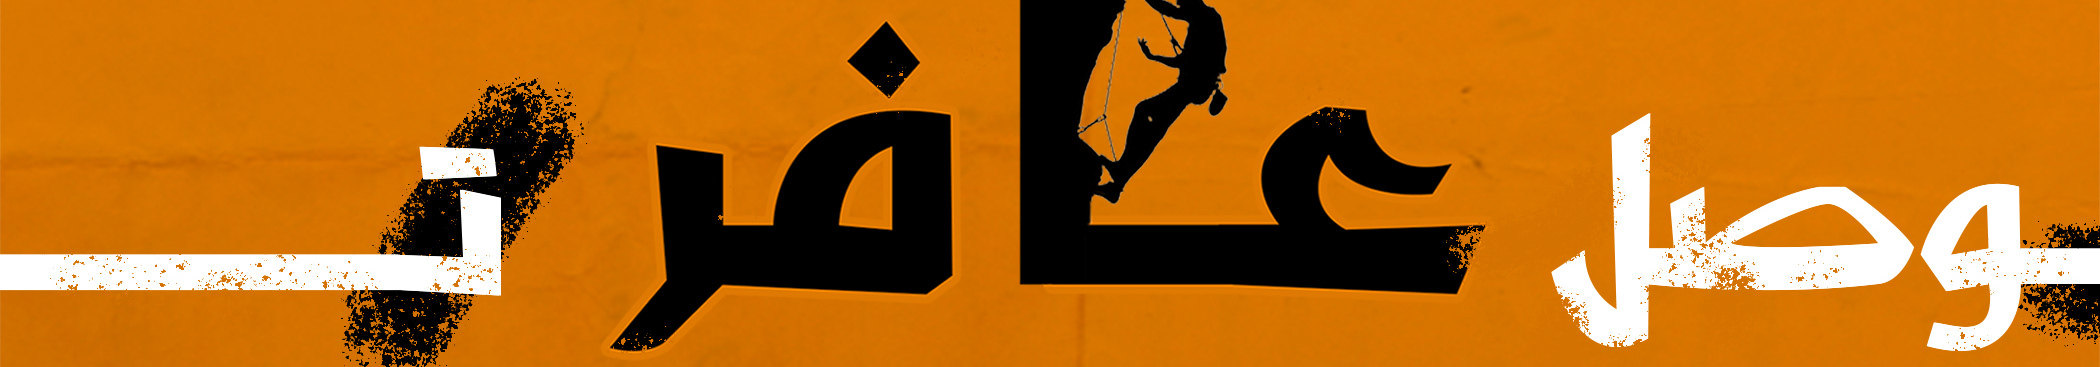 Mohamed Ali's profile banner